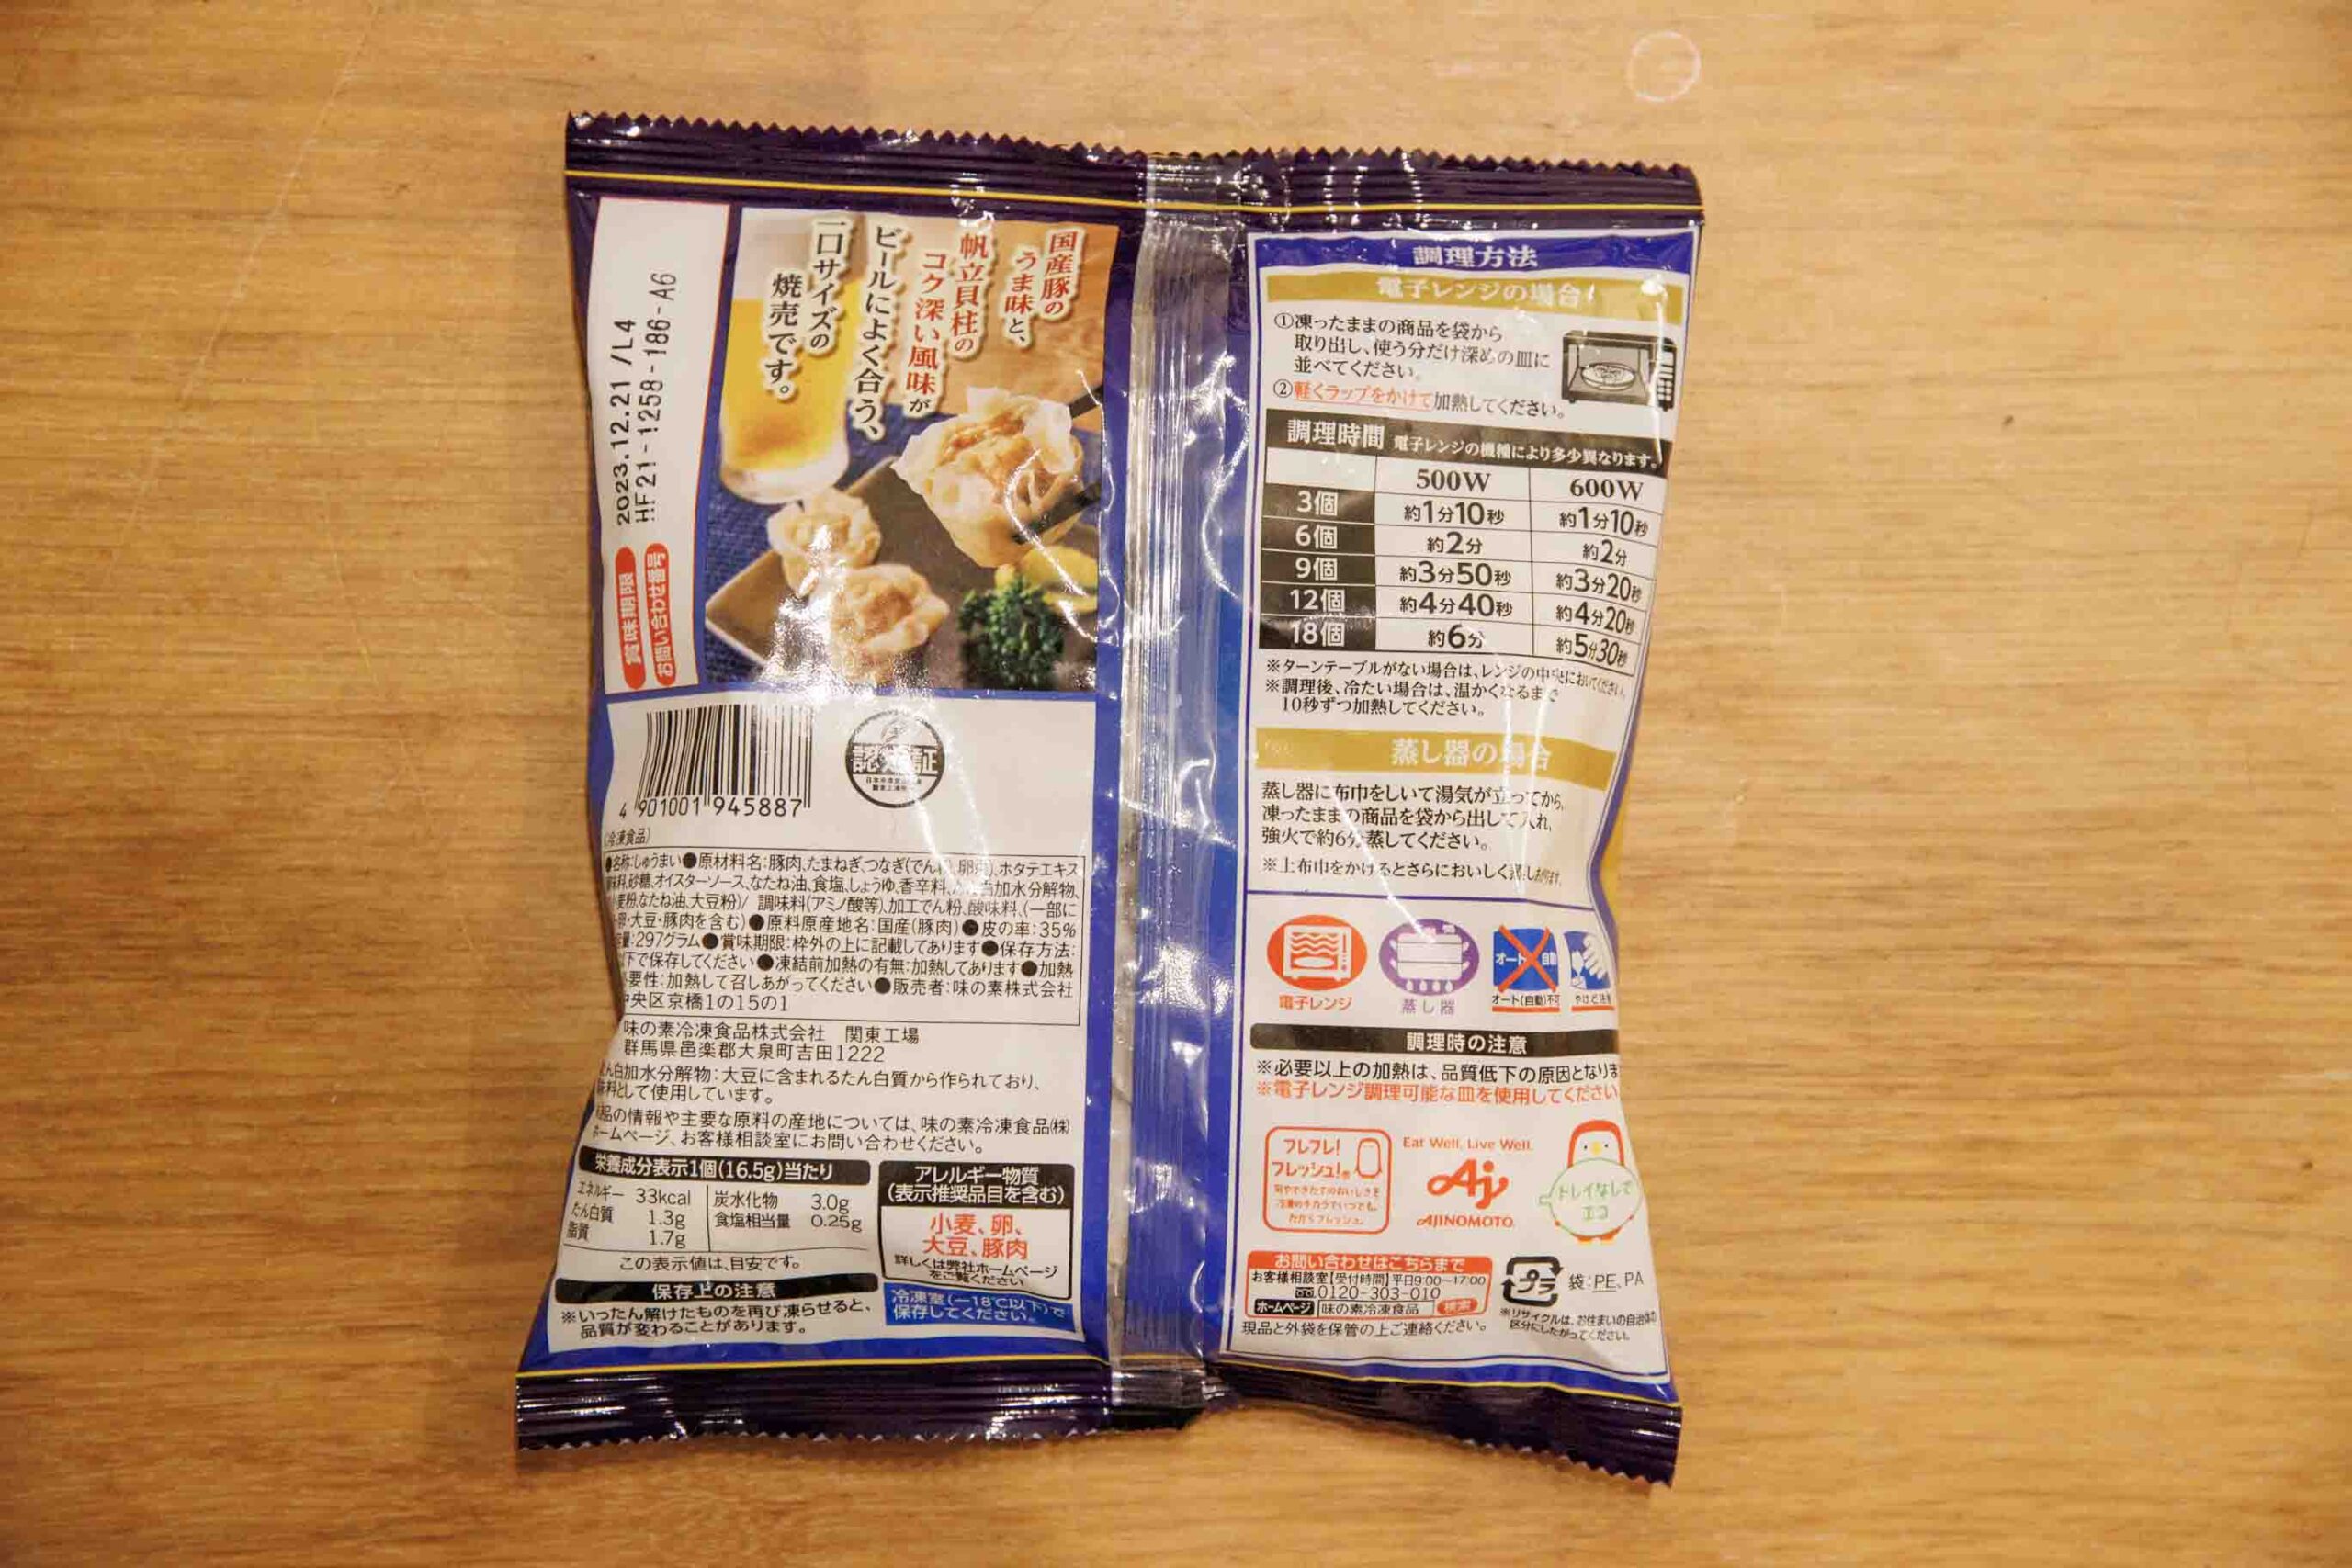 味の素の冷凍食品「おつまみ焼売」のパッケージ裏面の写真